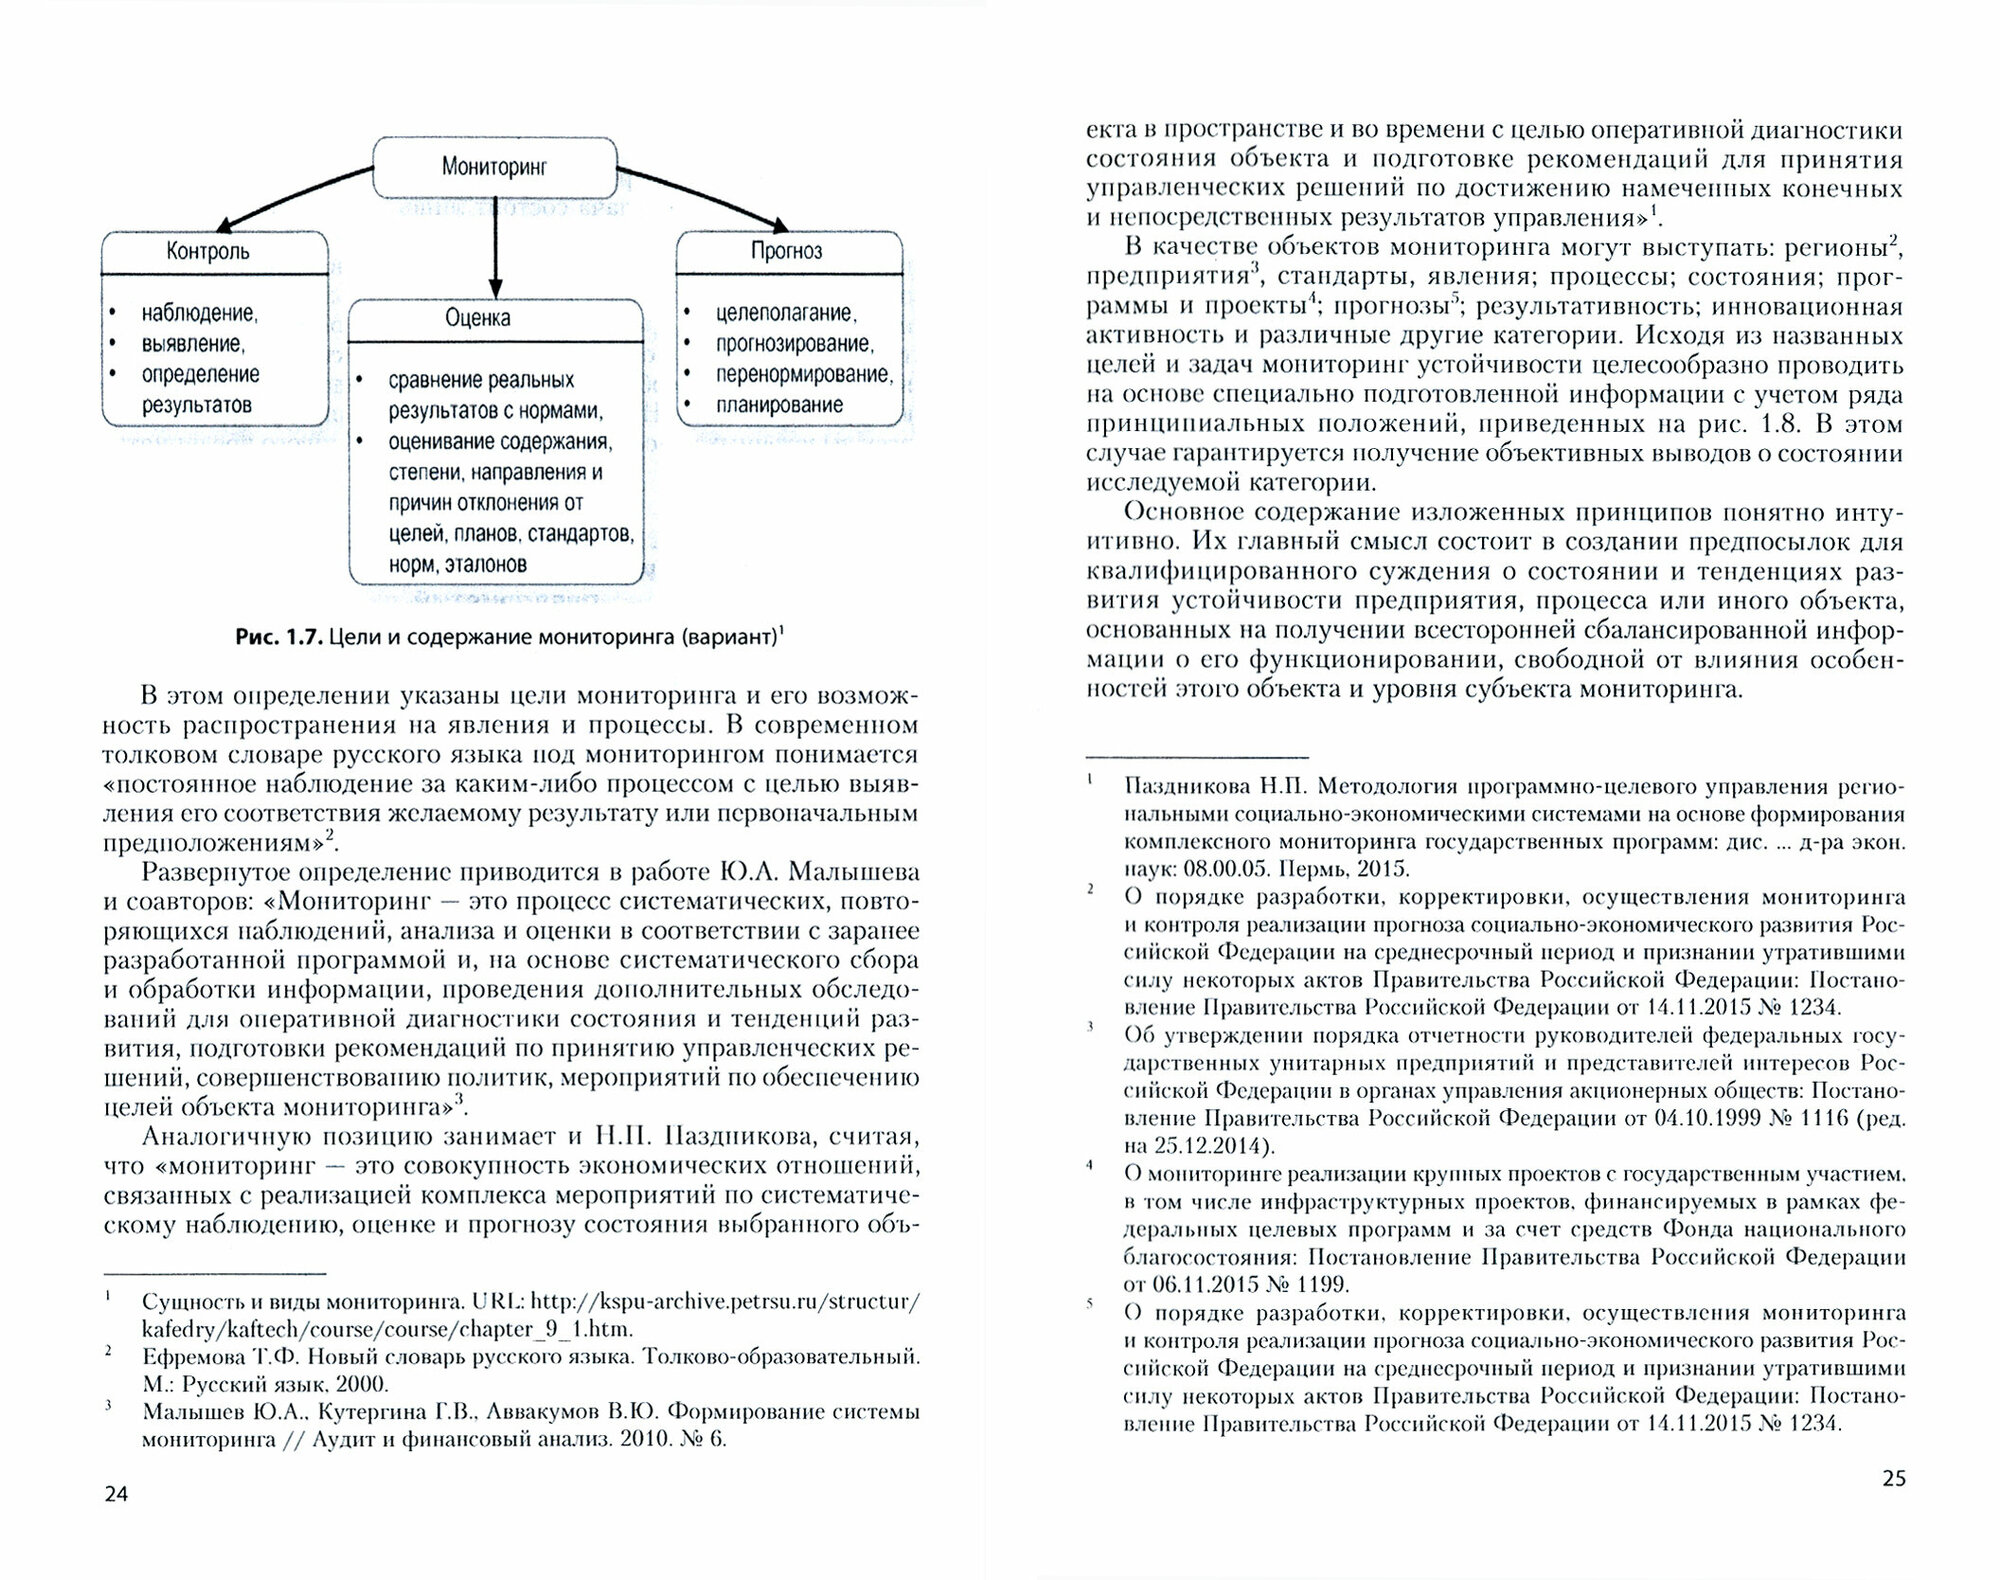 Мониторинг устойчивости предприятий с длительным производственным циклом - фото №3